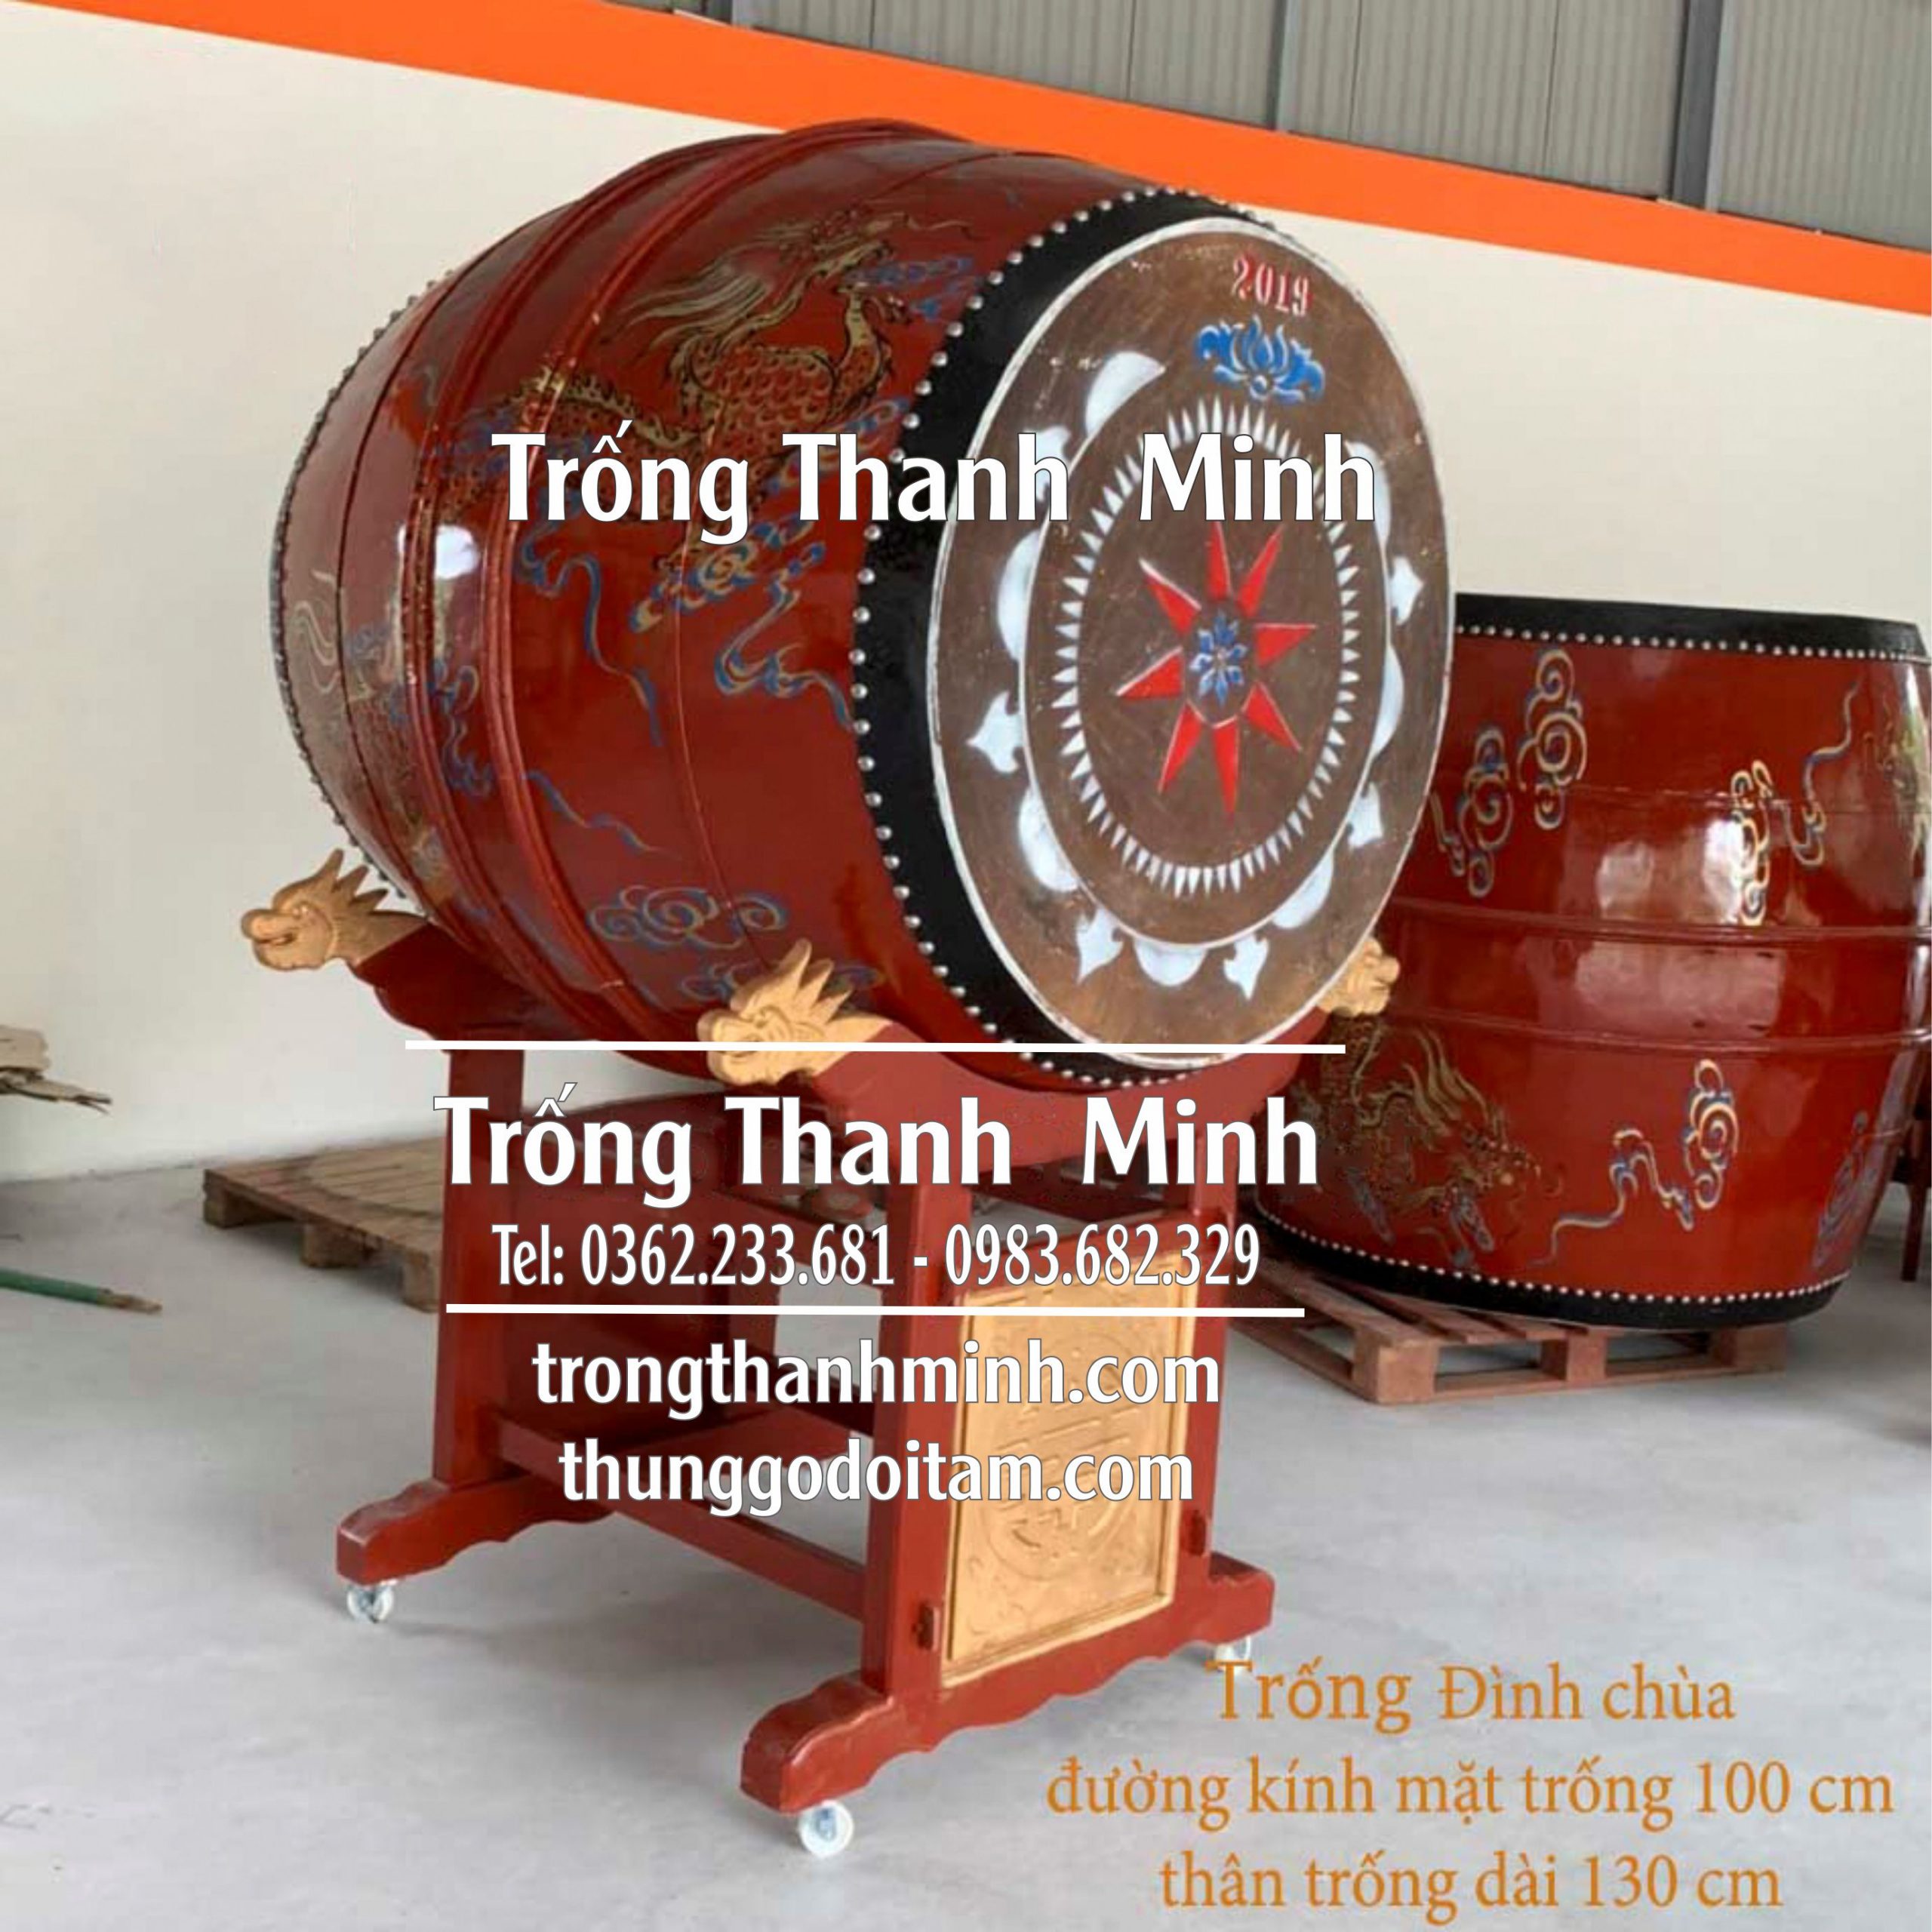 Xưởng sản xuất Trống chùa giá rẻ Thanh Minh kích thước mặt trống 100cm cao 130cm